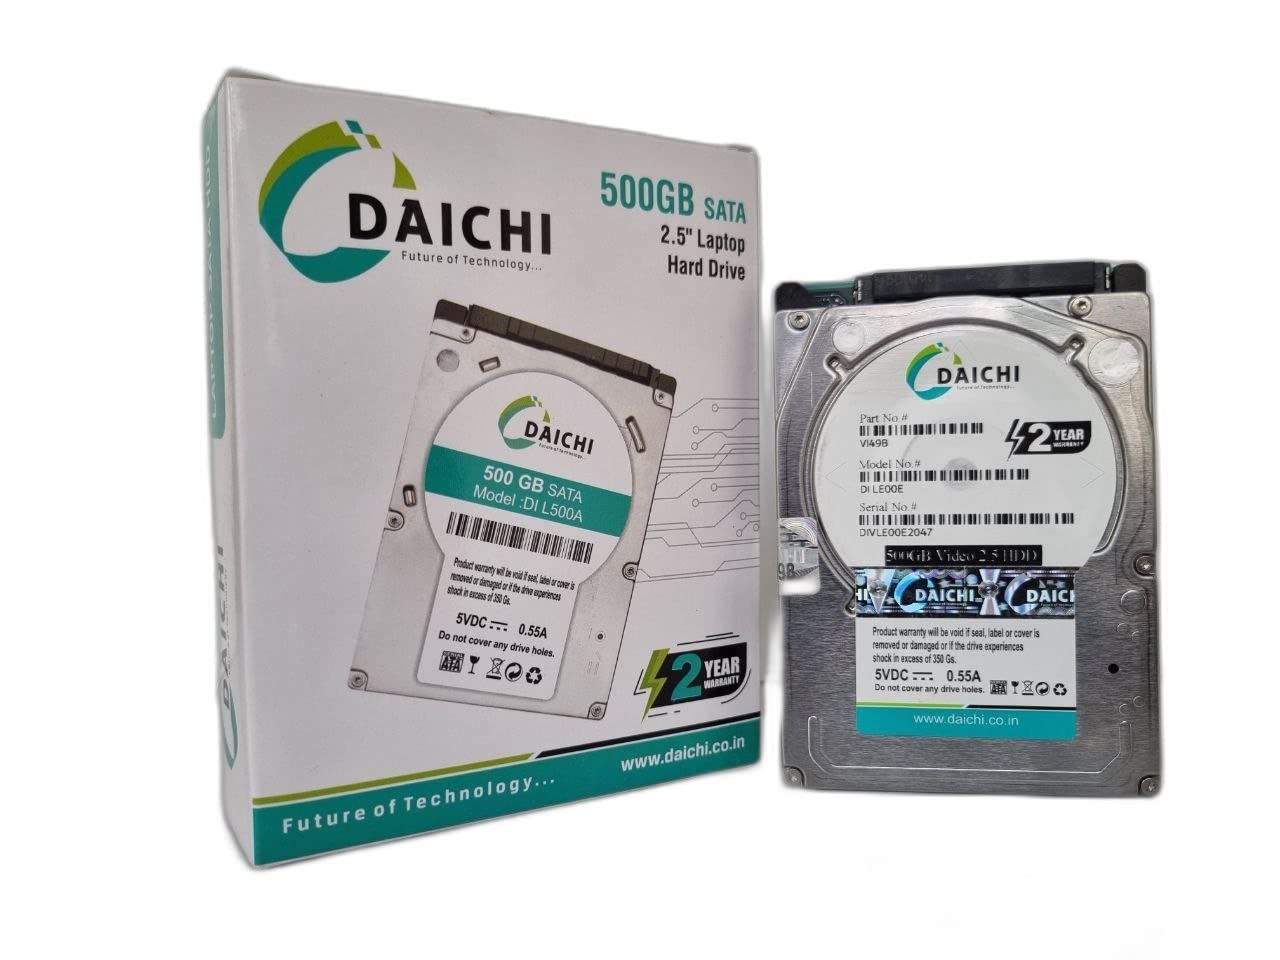 DAICHI 500GB sata 2.5 Laptop Hard Drive with 2 Year Warranty…